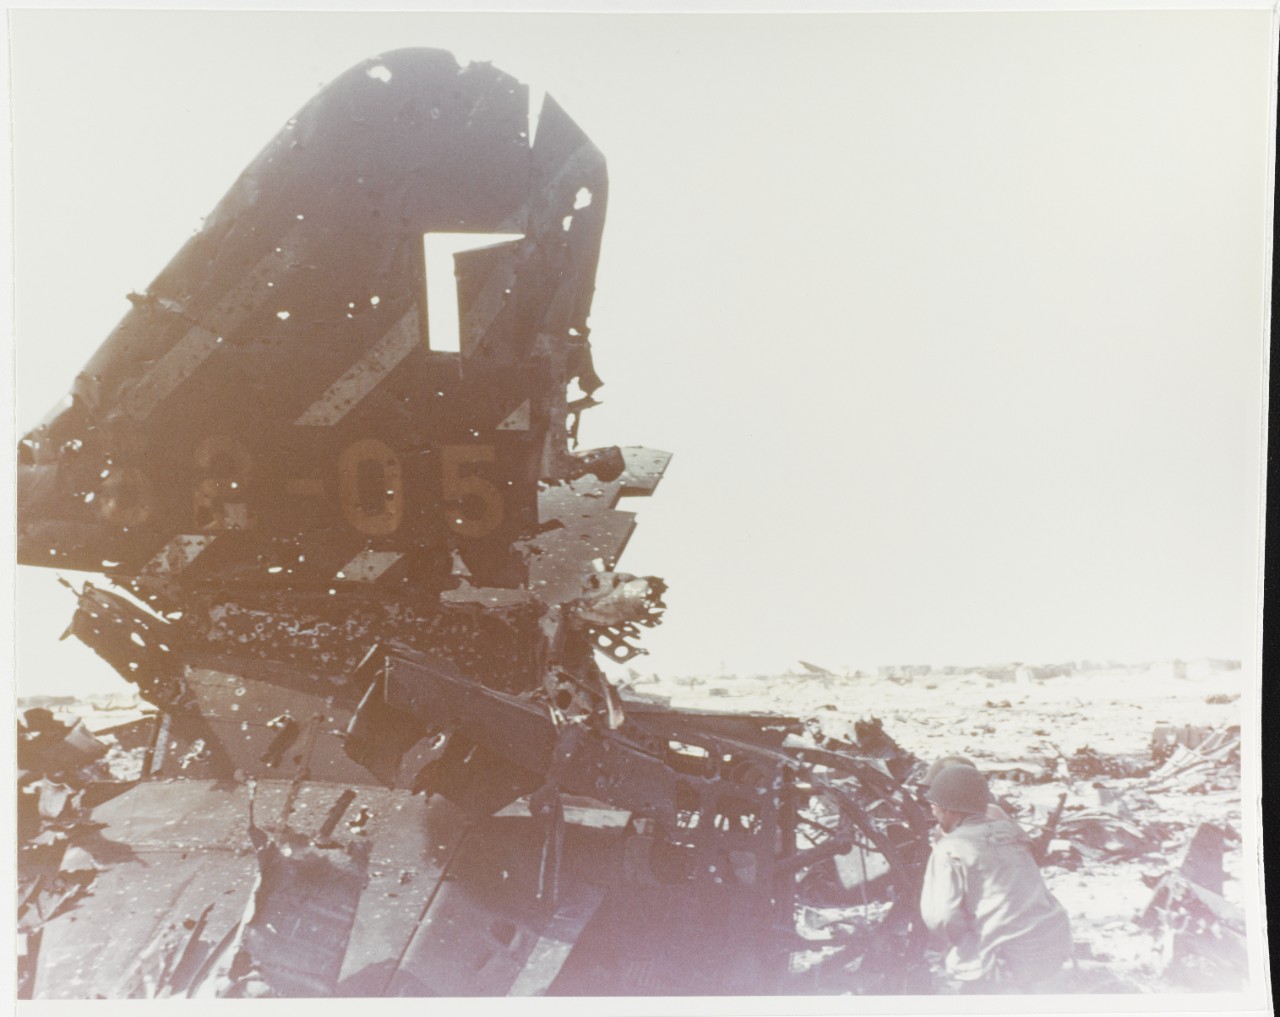 Kwajalein Operation, 1944